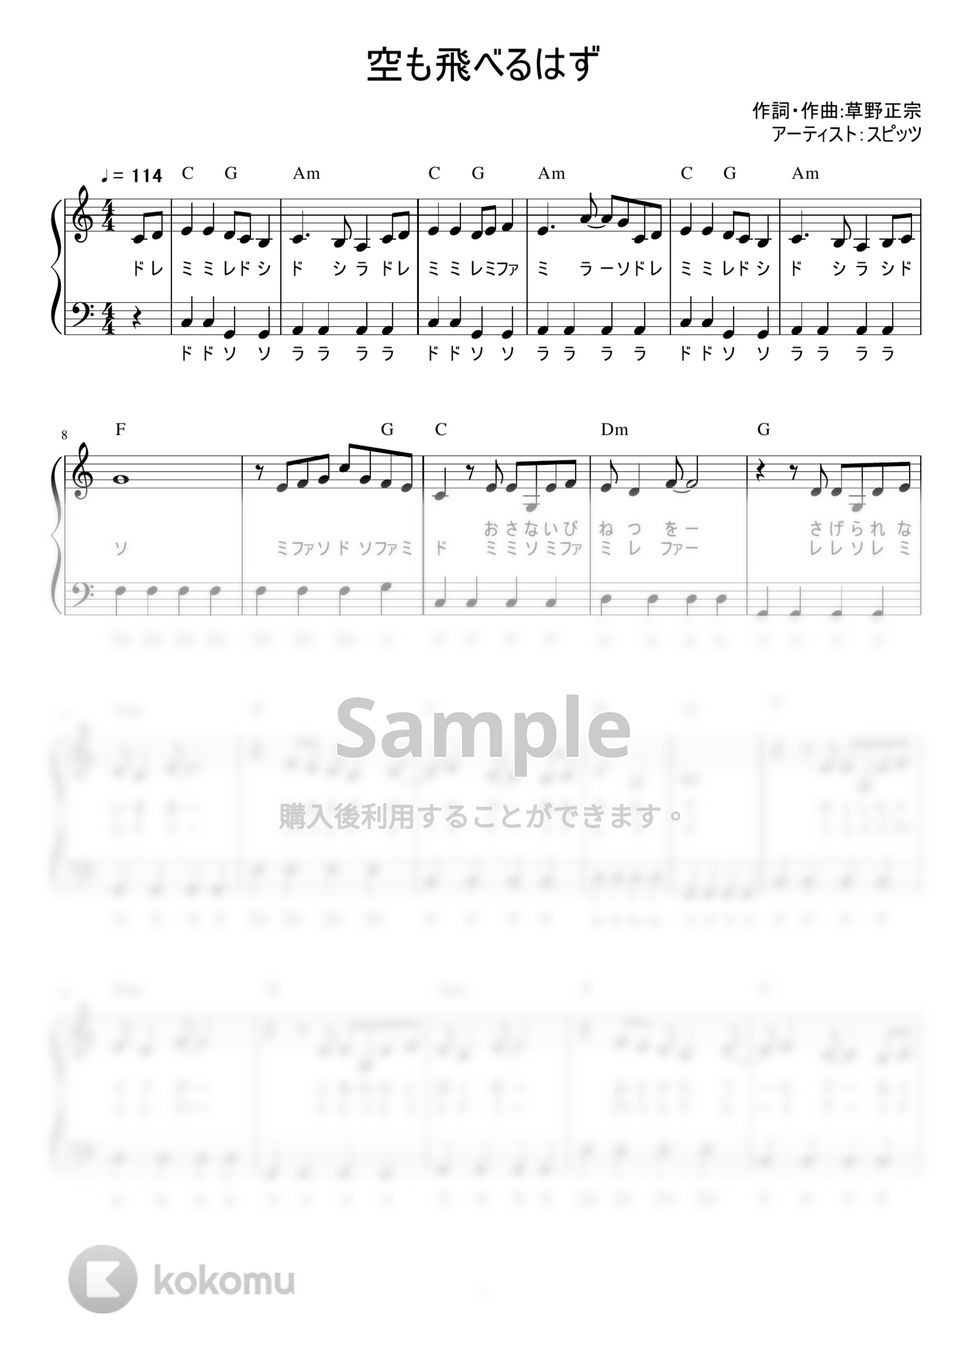 スピッツ - 空も飛べるはず (かんたん / 歌詞付き / ドレミ付き / 初心者) by piano.tokyo